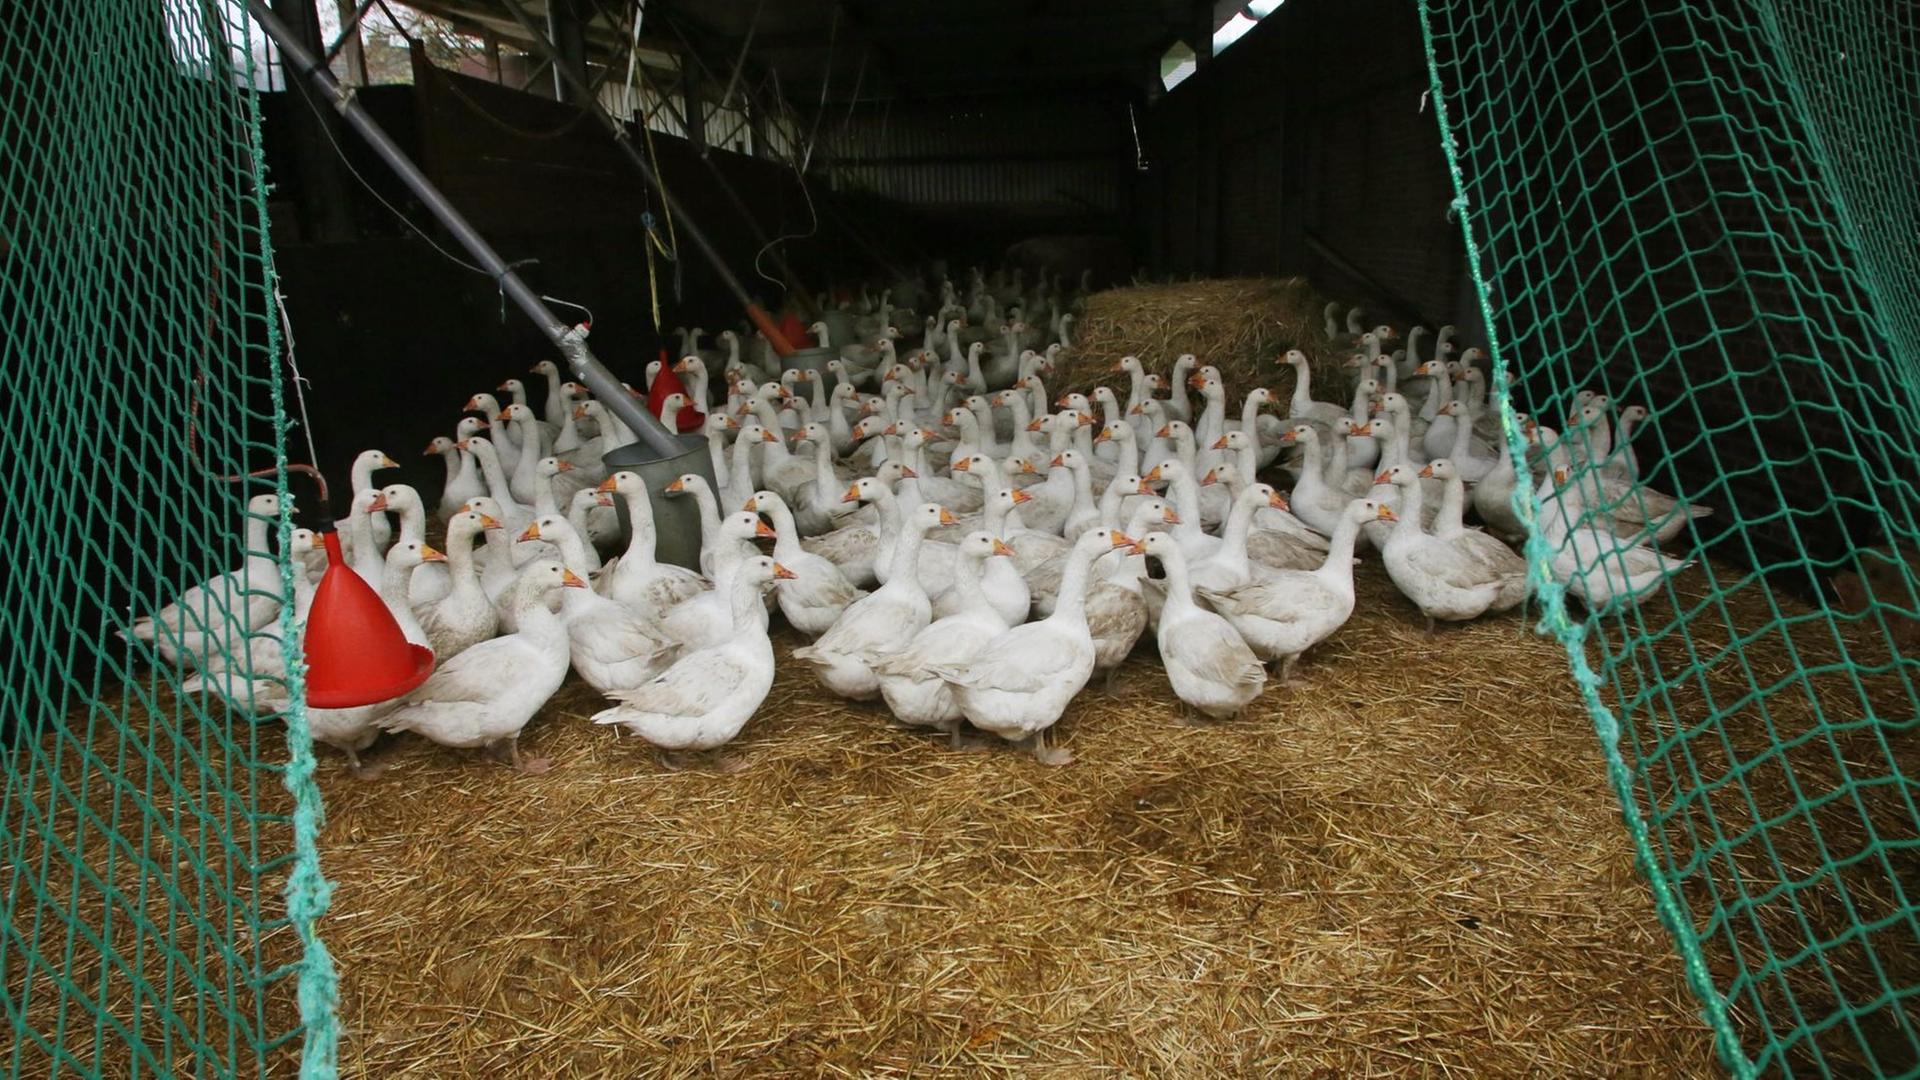 Gänse leben am 15.11.2016 im Ruhrgebiet (Nordrhein-Westfalen) nach der angeordneten Stallpflicht im Stall. In bestimmten Teilen Nordrhein-Westfalens gilt seit heute wegen der Vogelgrippe eine Stallpflicht für Geflügel.